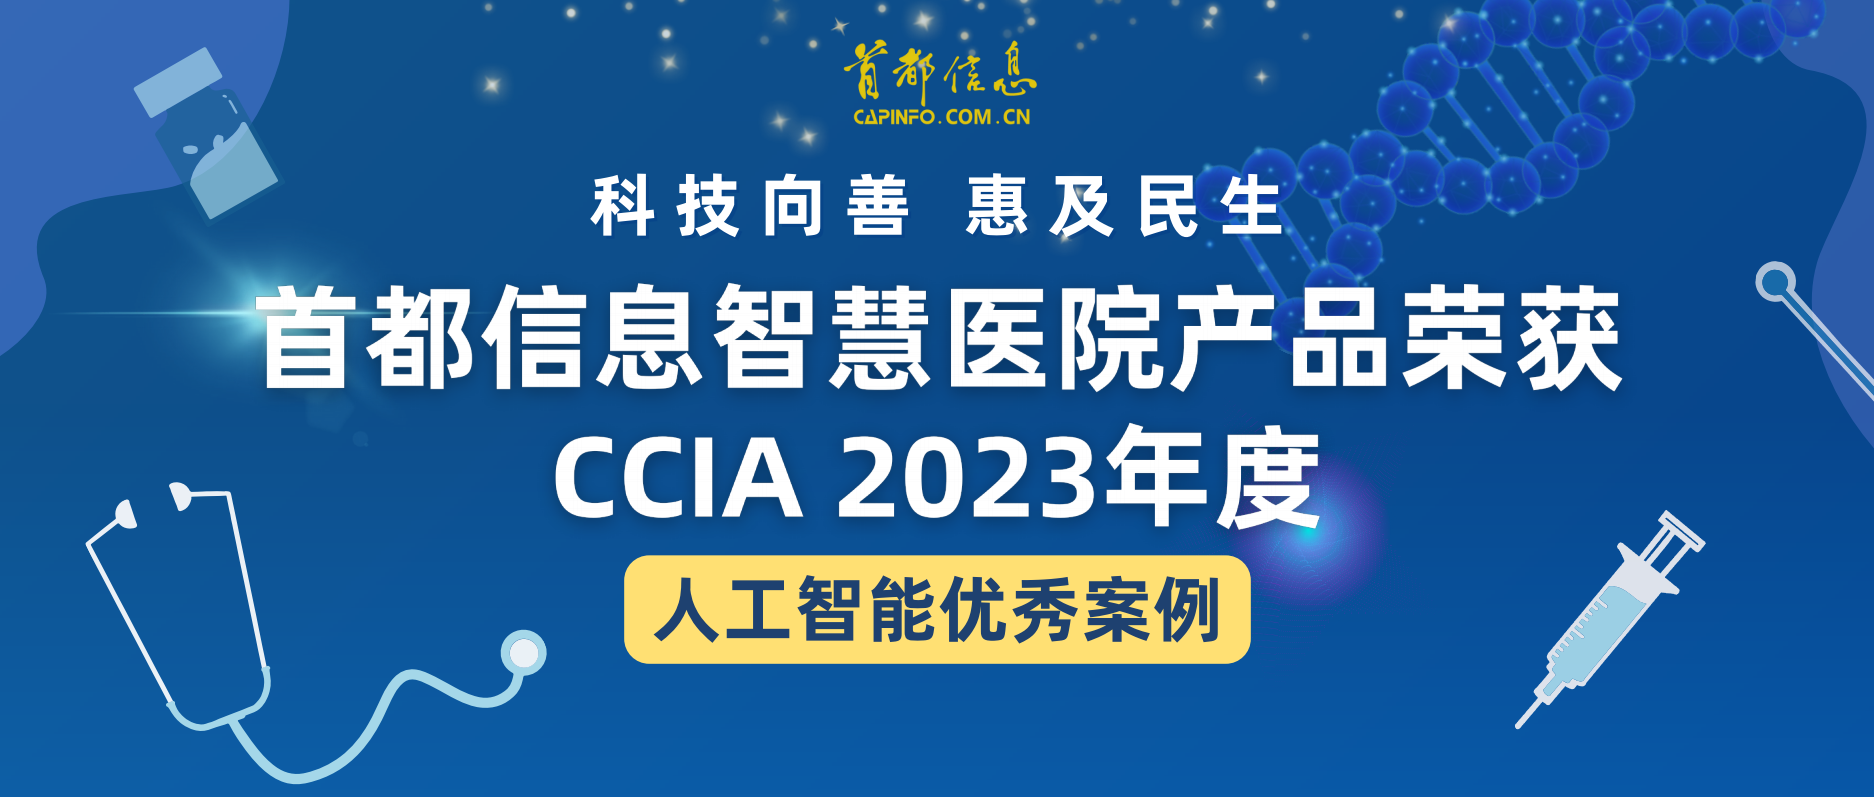 科技向善 惠及民生 香港图库资料宝典大全智慧医院产品荣获CCIA2023年度人工智能优秀案例